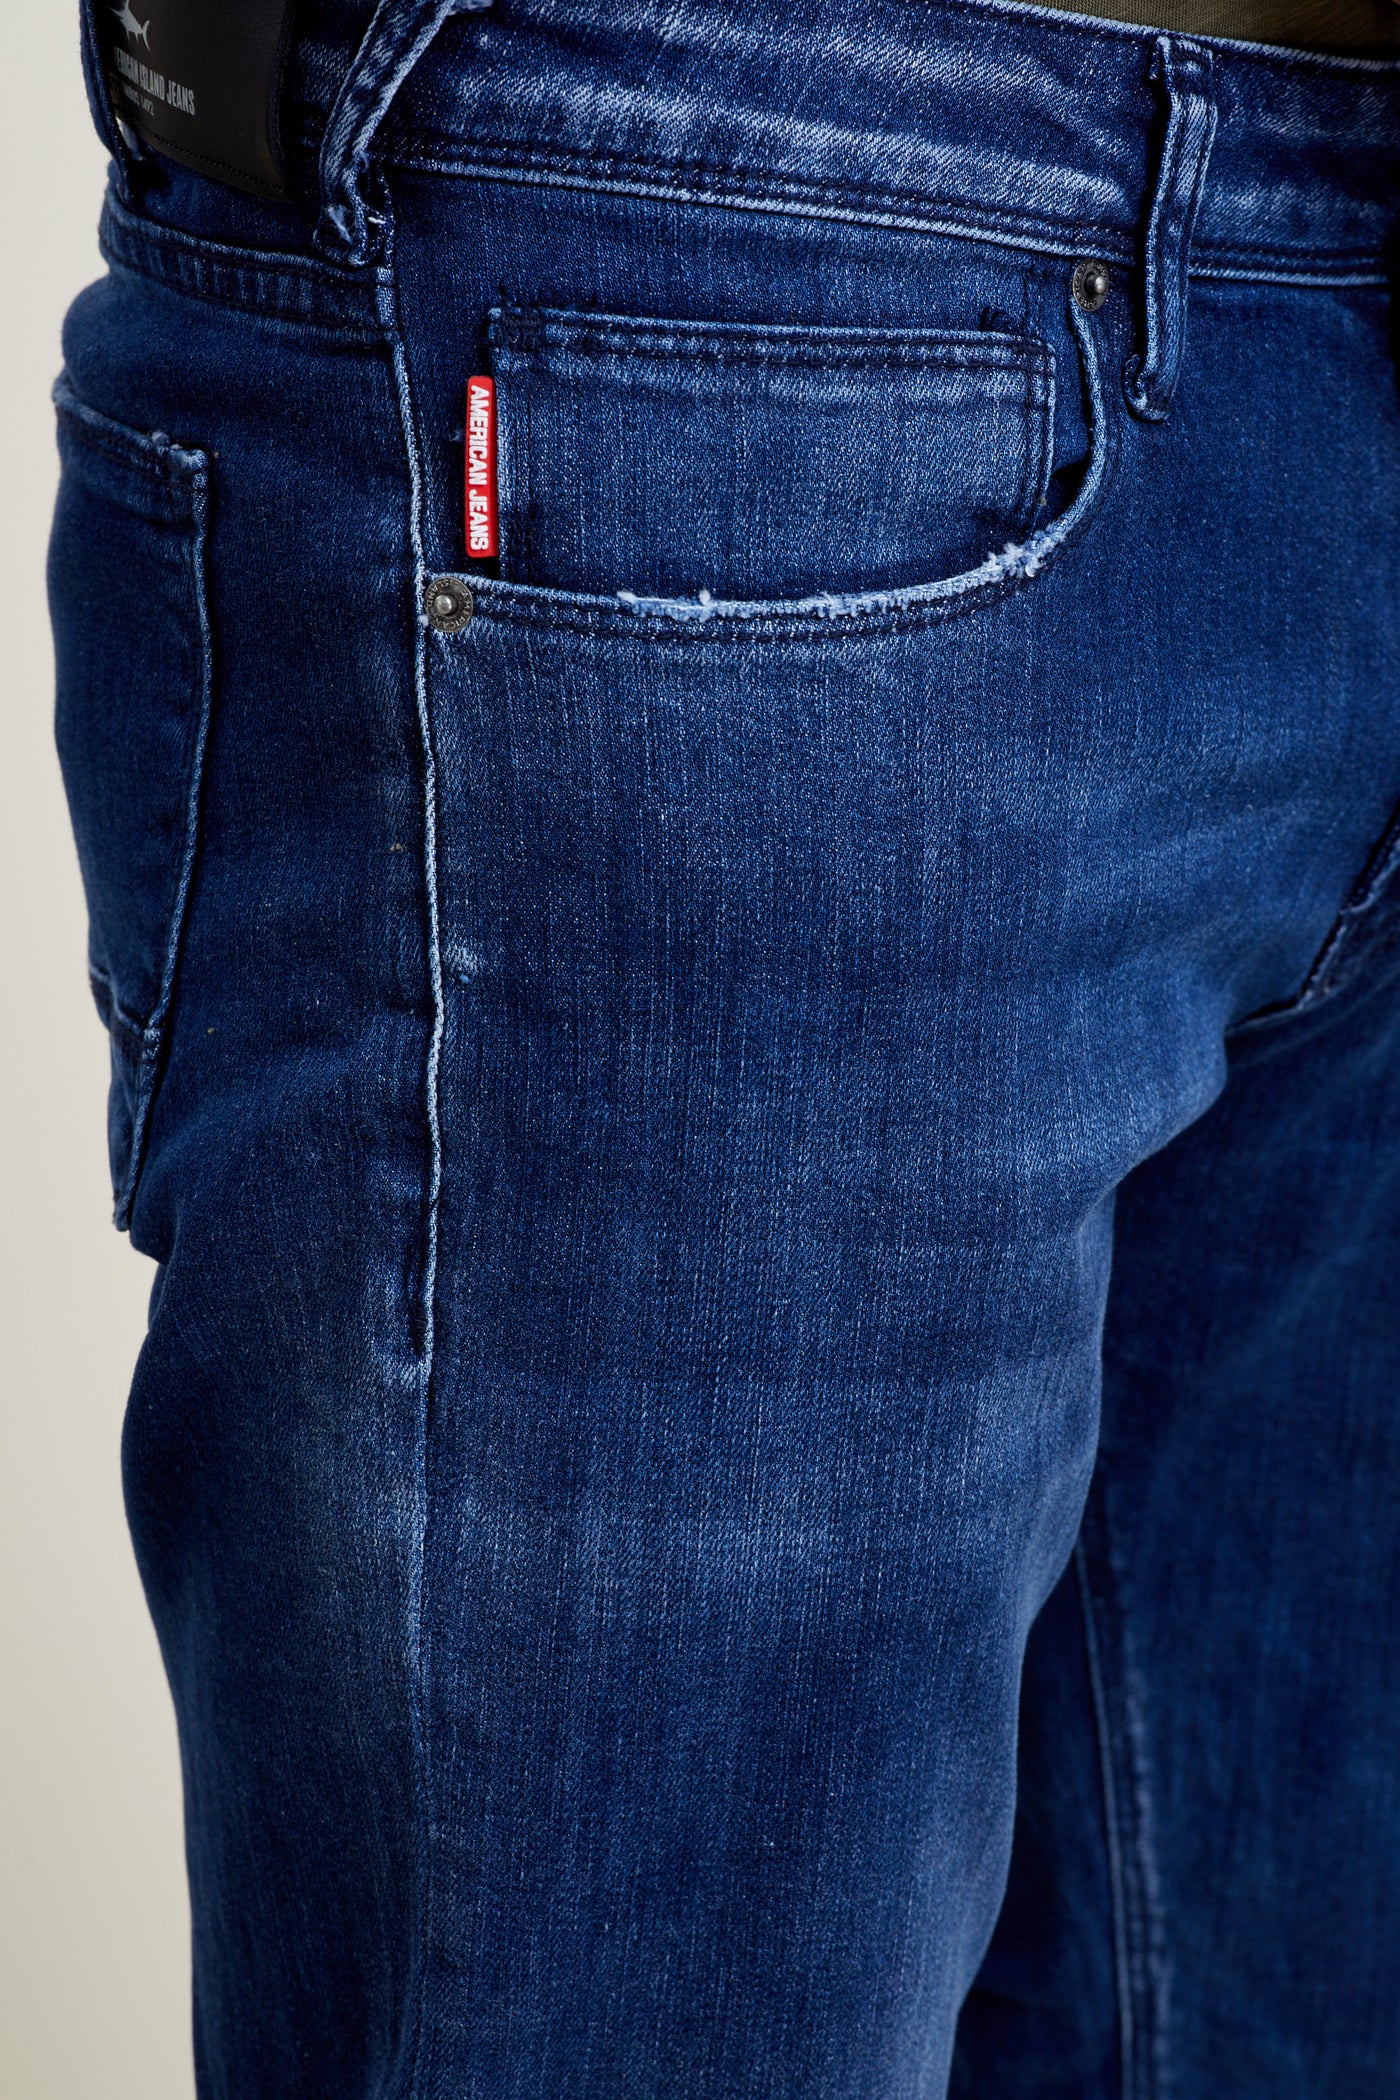 מכנס ג'ינס ריגולר בצבע כחול 2